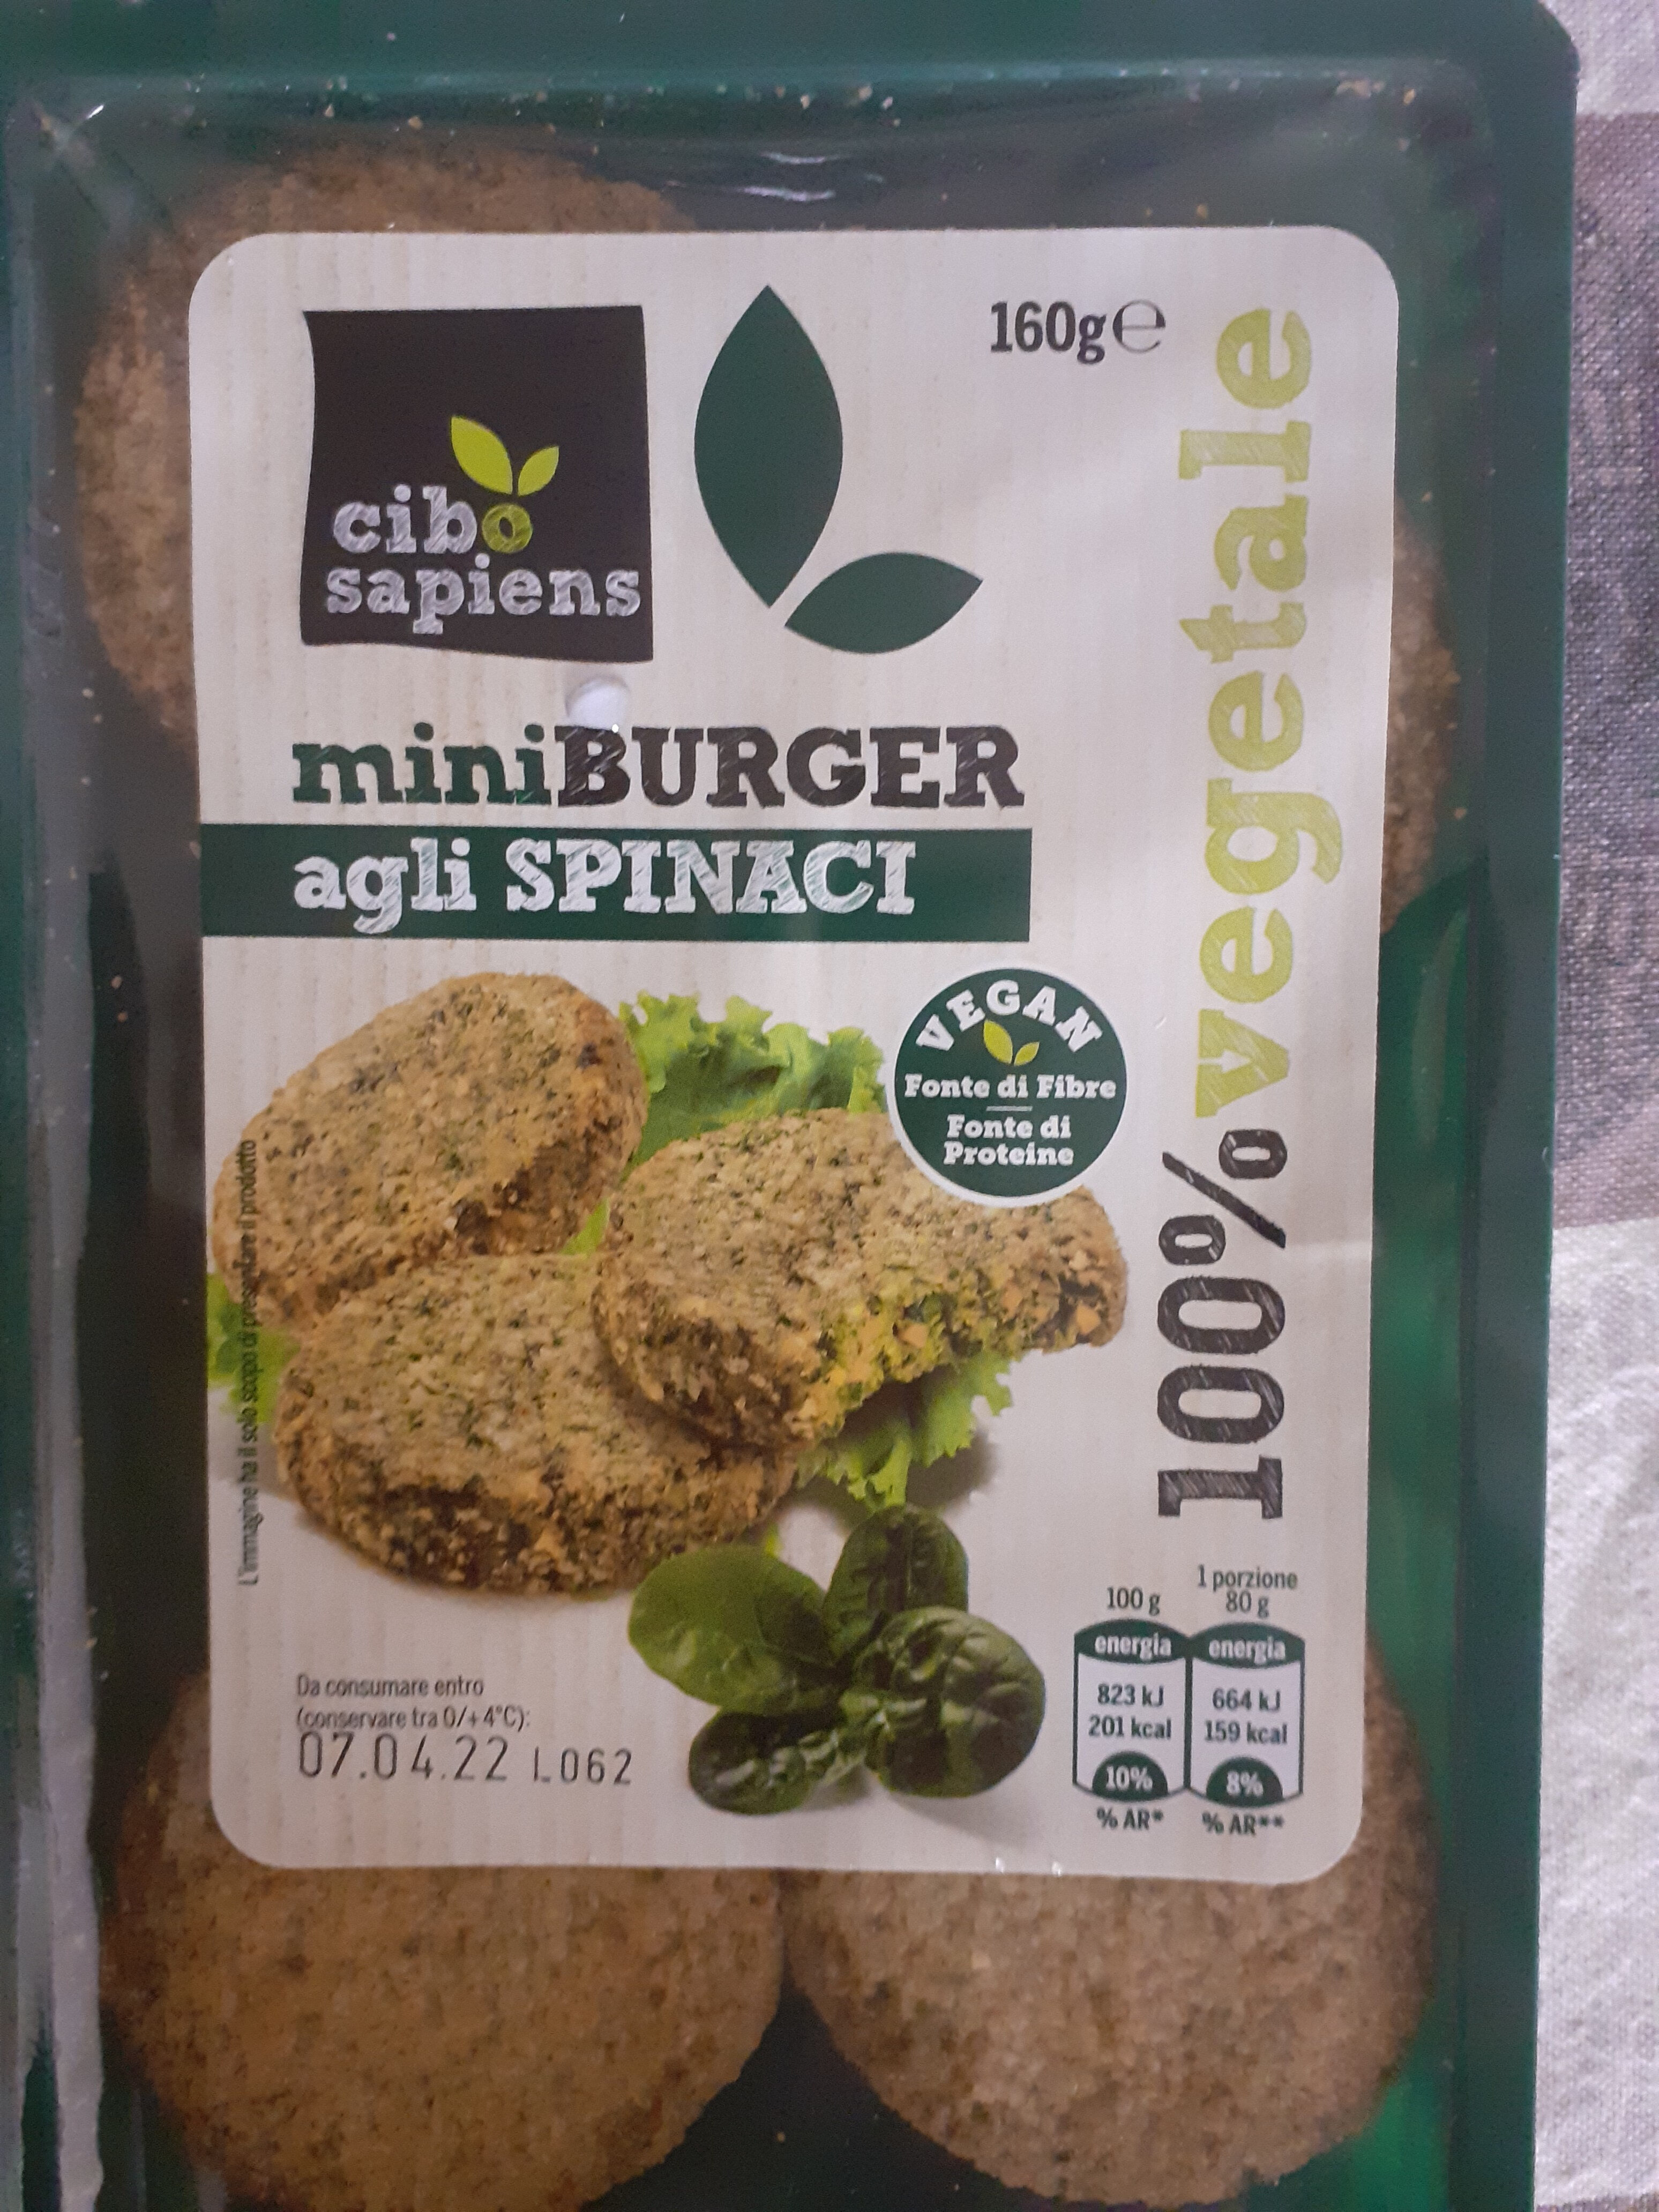 Mini Burger agli spinaci - Product - it